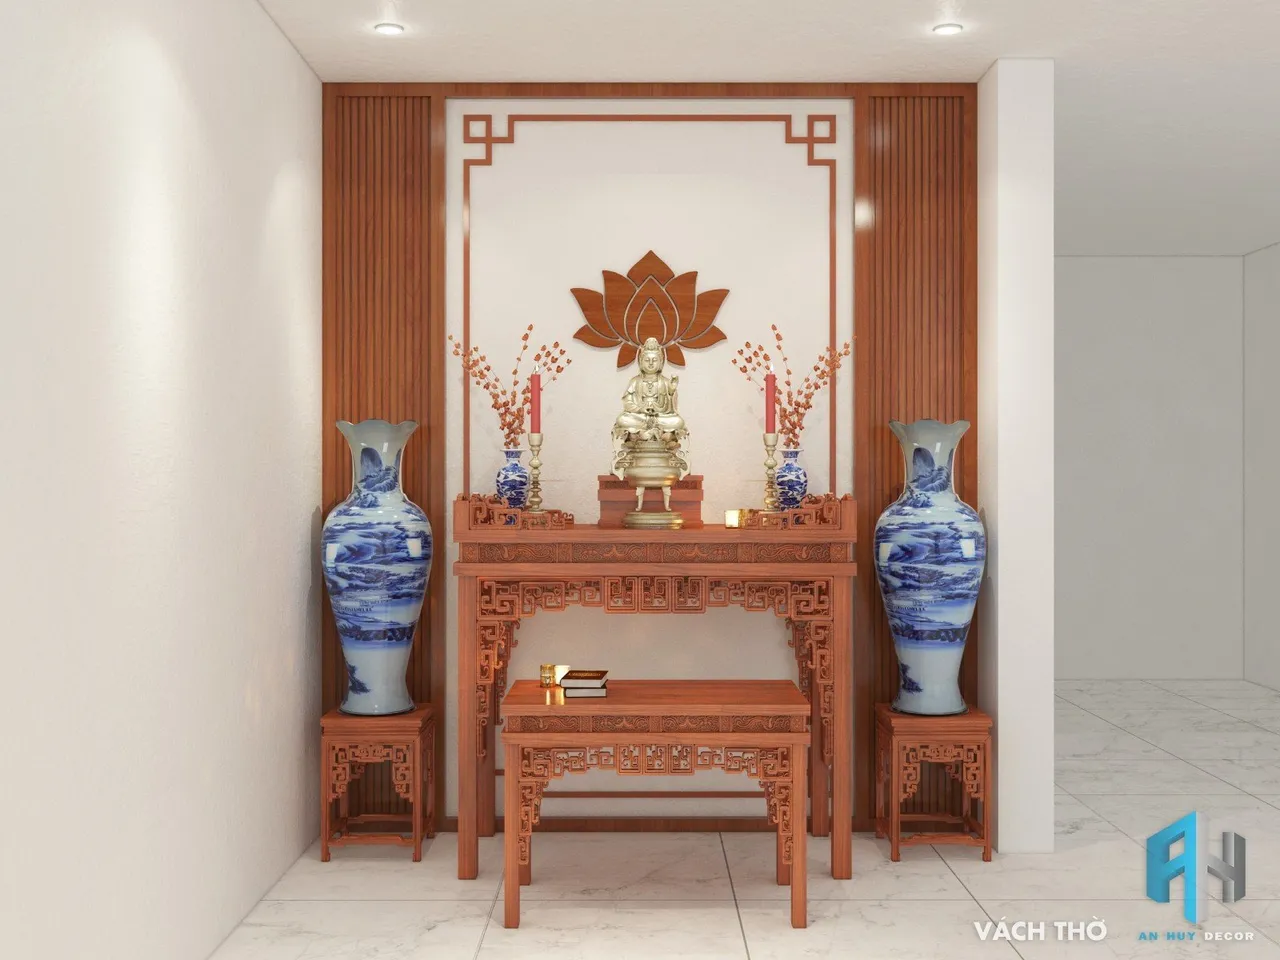 Concept nội thất phòng thờ Nhà phố Cai Lậy, Tiền Giang phong cách Hiện đại Modern